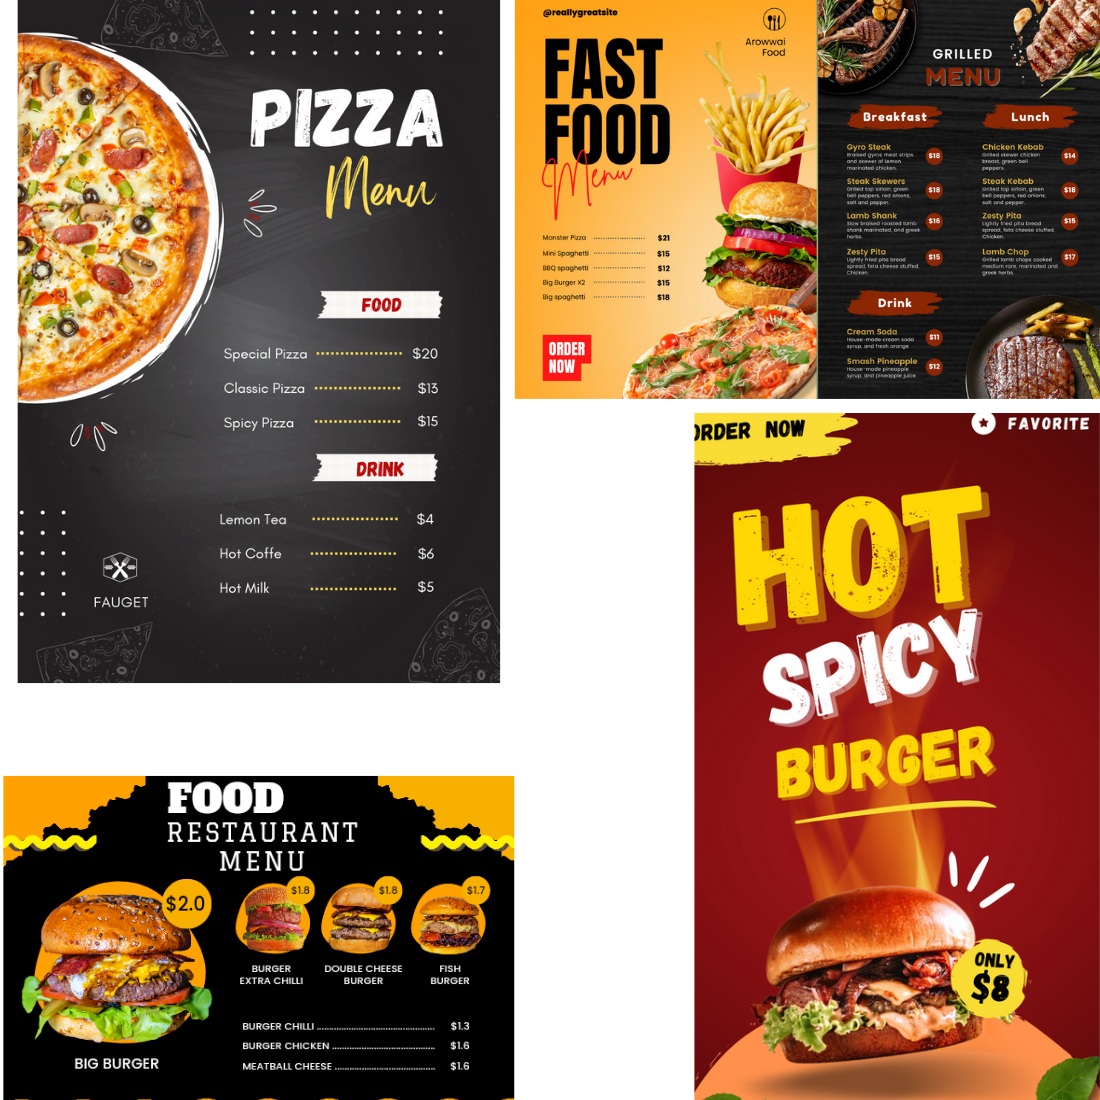 Food Digital Menu Template for Restaurants or Cafe Bar cover image.